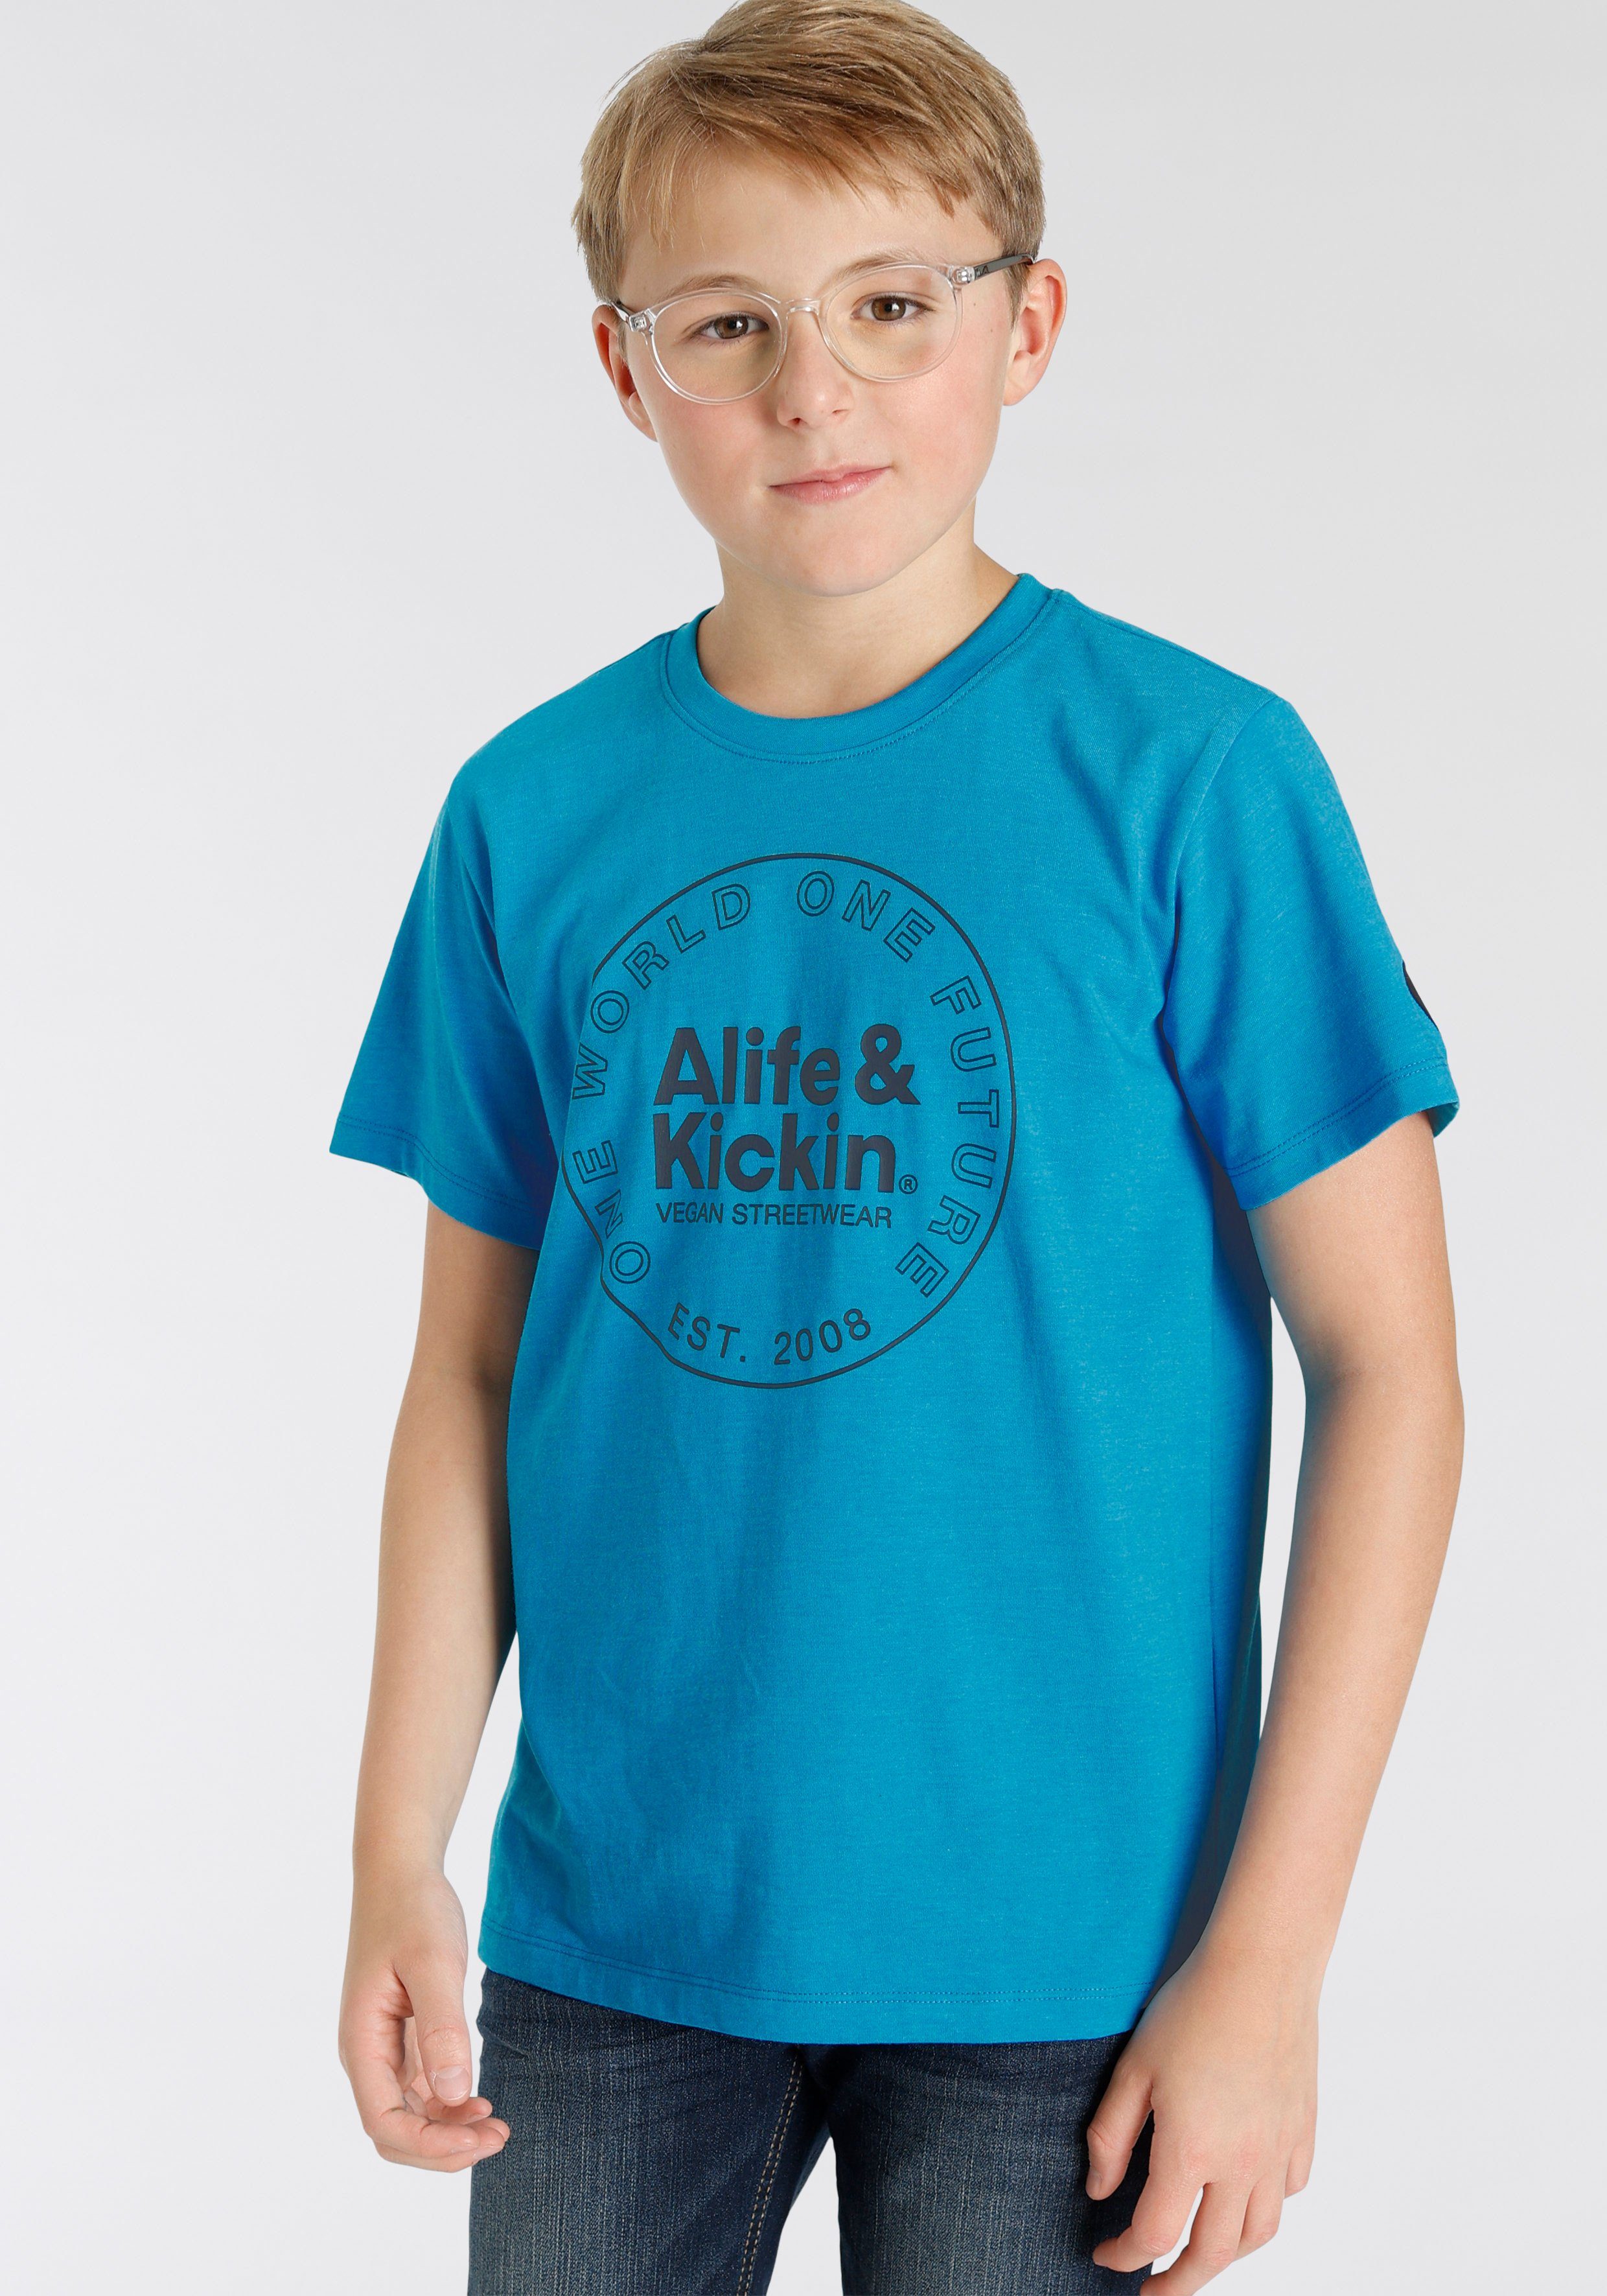 Alife & Kickin melierter MARKE! T-Shirt in für Kids Qualität, Alife&Kickin Logo-Print NEUE